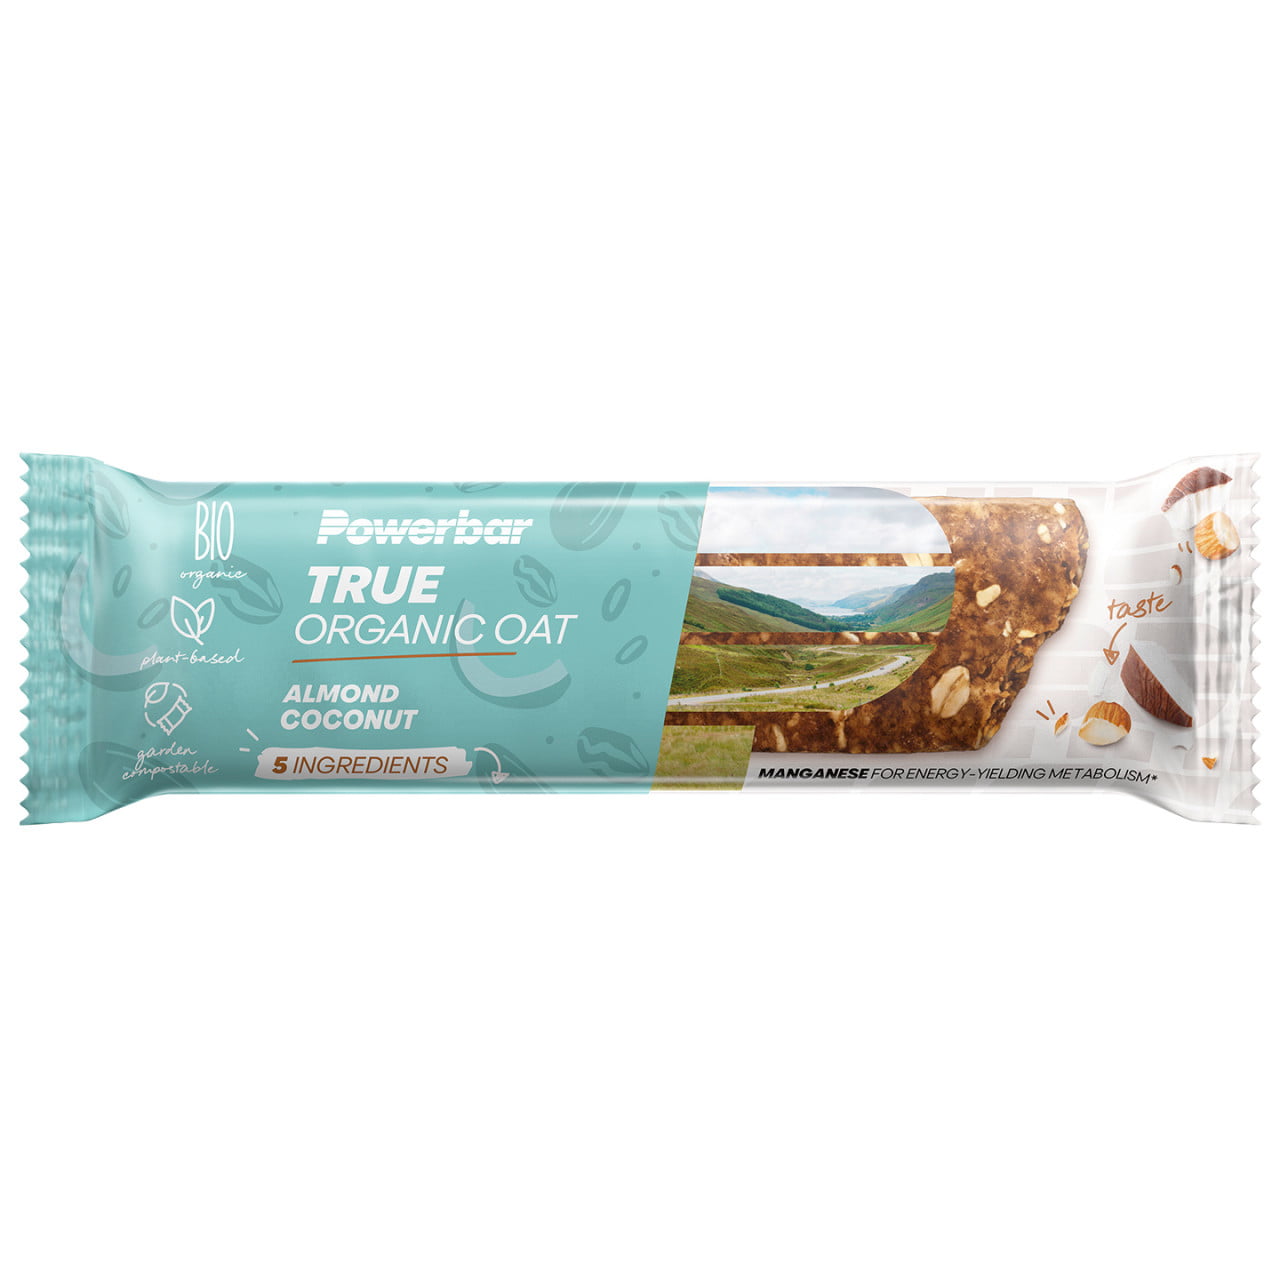 True Organic OAT Riegel Almond Coconut 16 St/K